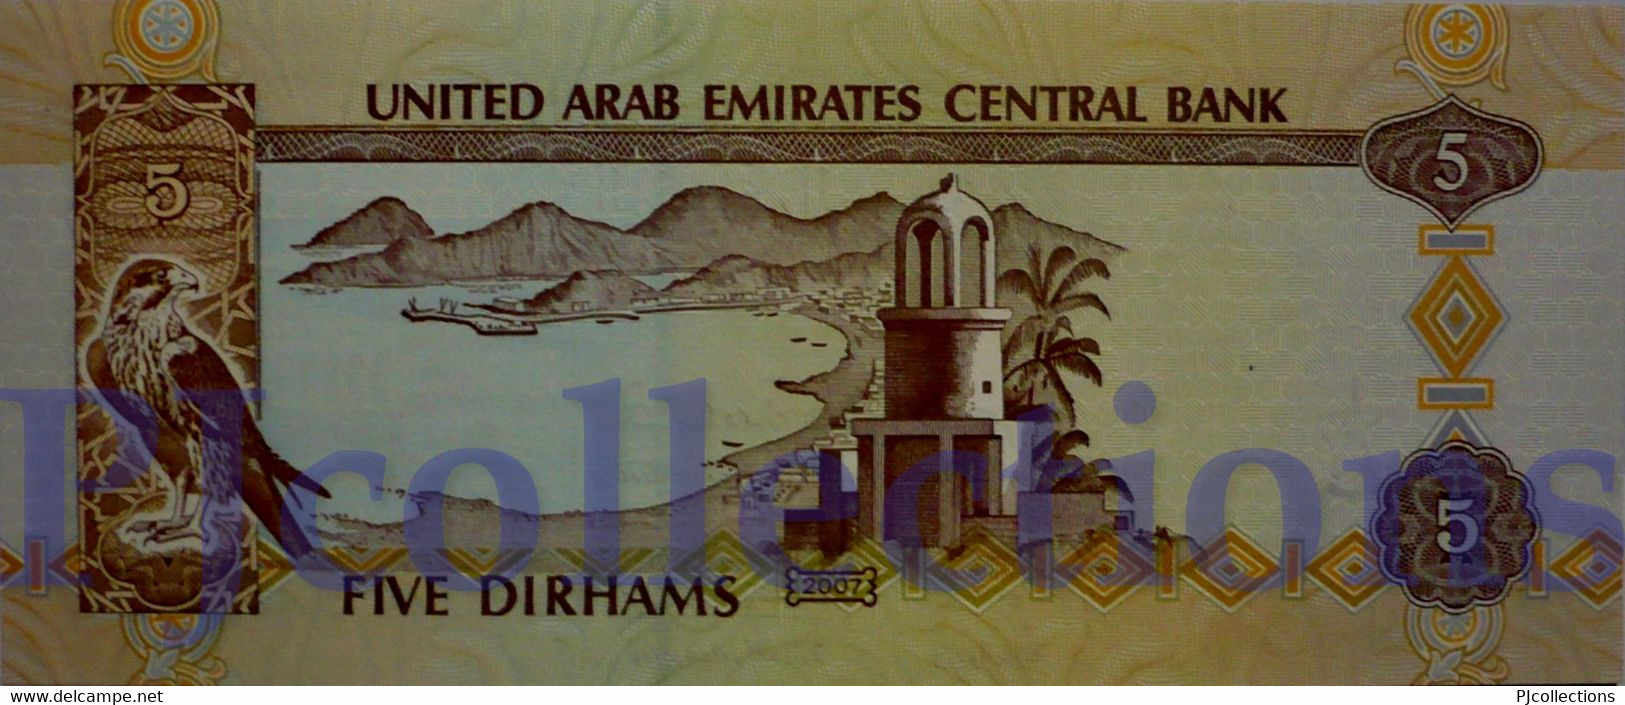 UNITED ARAB EMIRATES 5 DIRHAMS 2007 PICK 19d UNC - United Arab Emirates